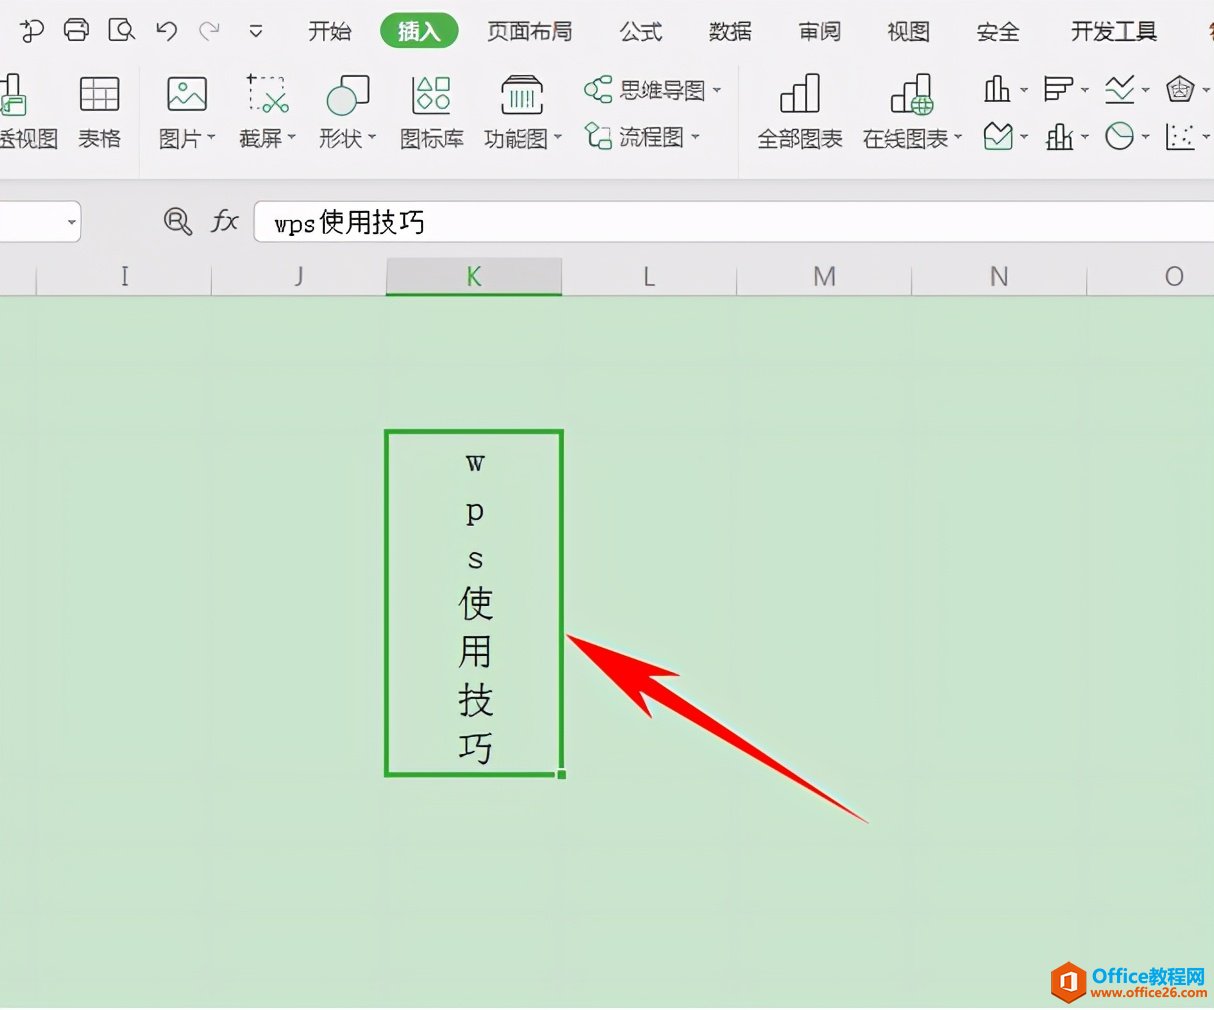 Excel表格技巧—如何在单元格内输入竖排文字